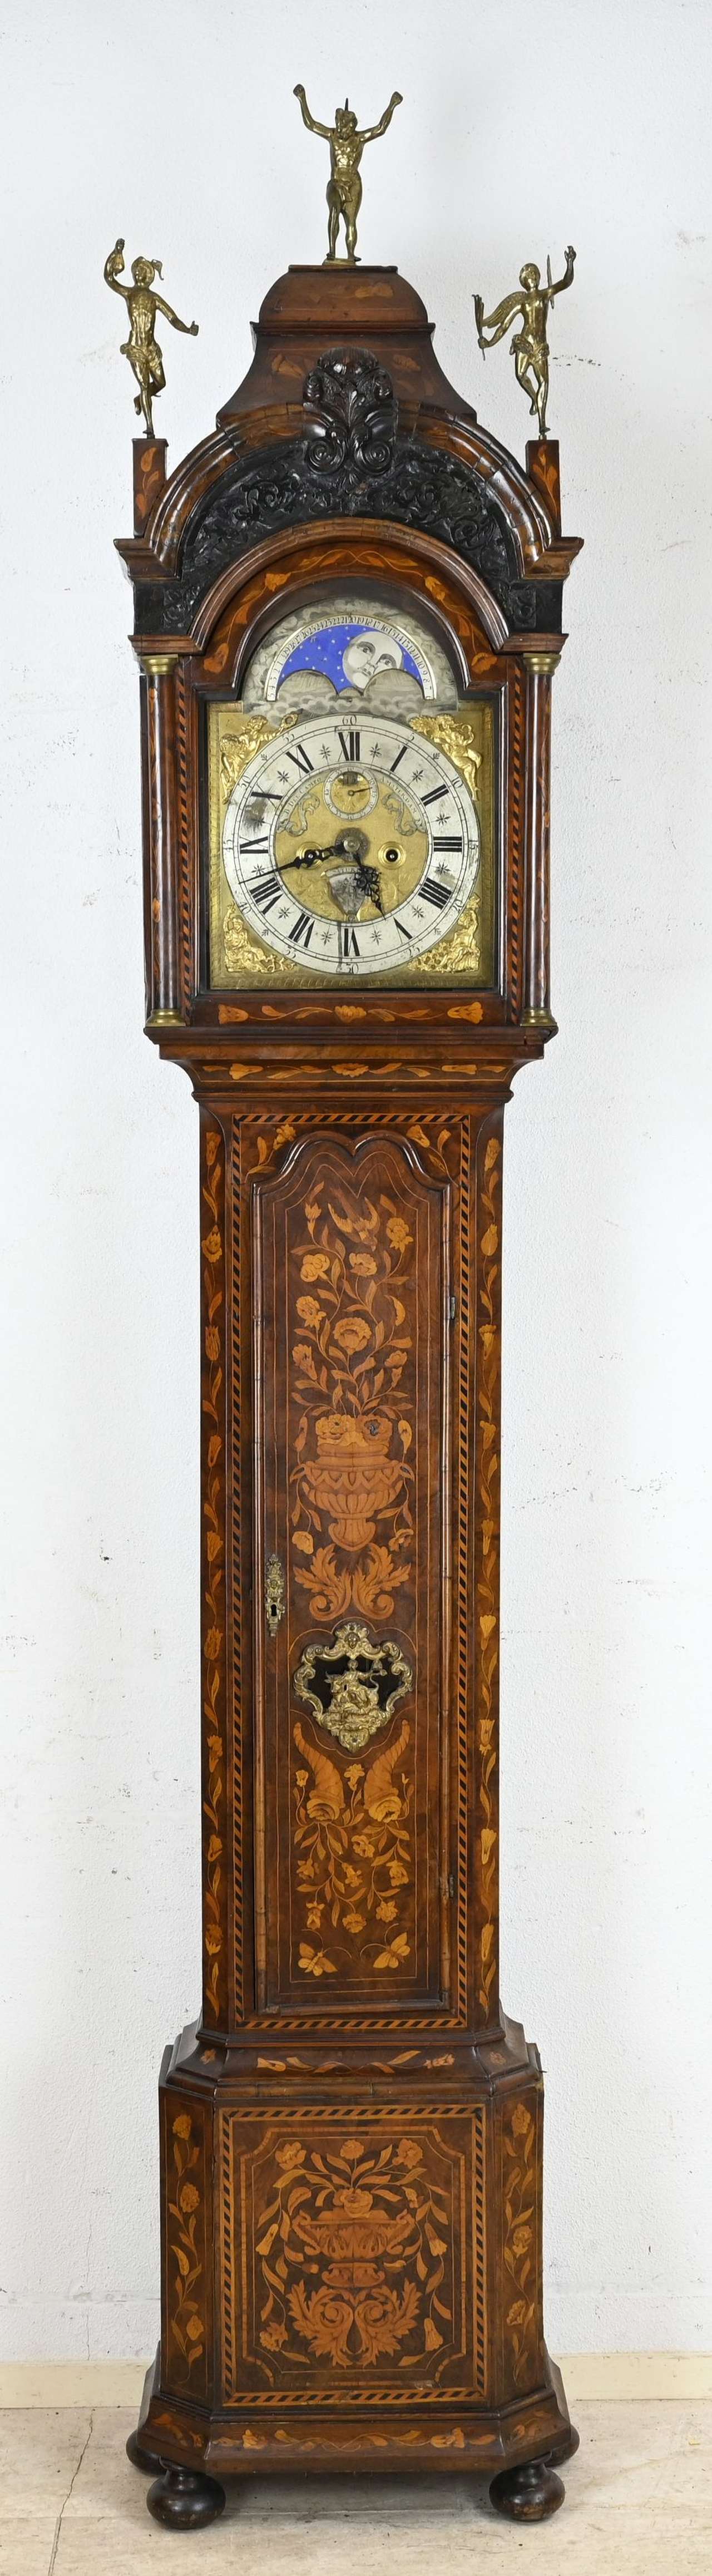 Amsterdamse staande klok, H 275 cm.